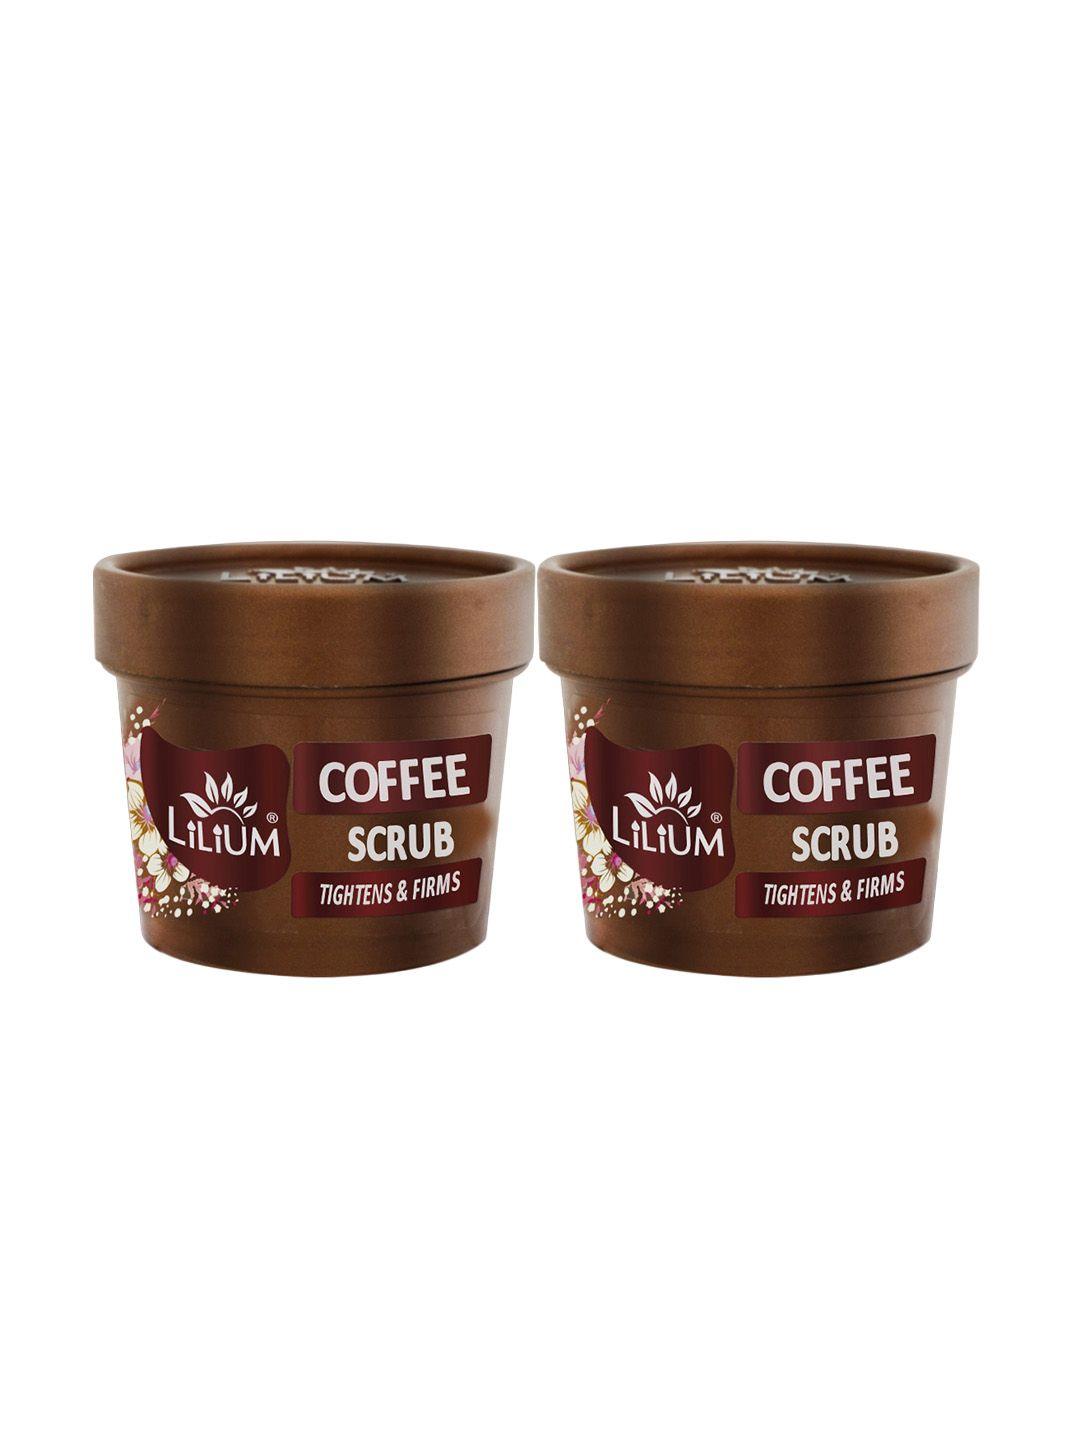 lilium set of 2 coffee tightens & firms scrub - 100g each